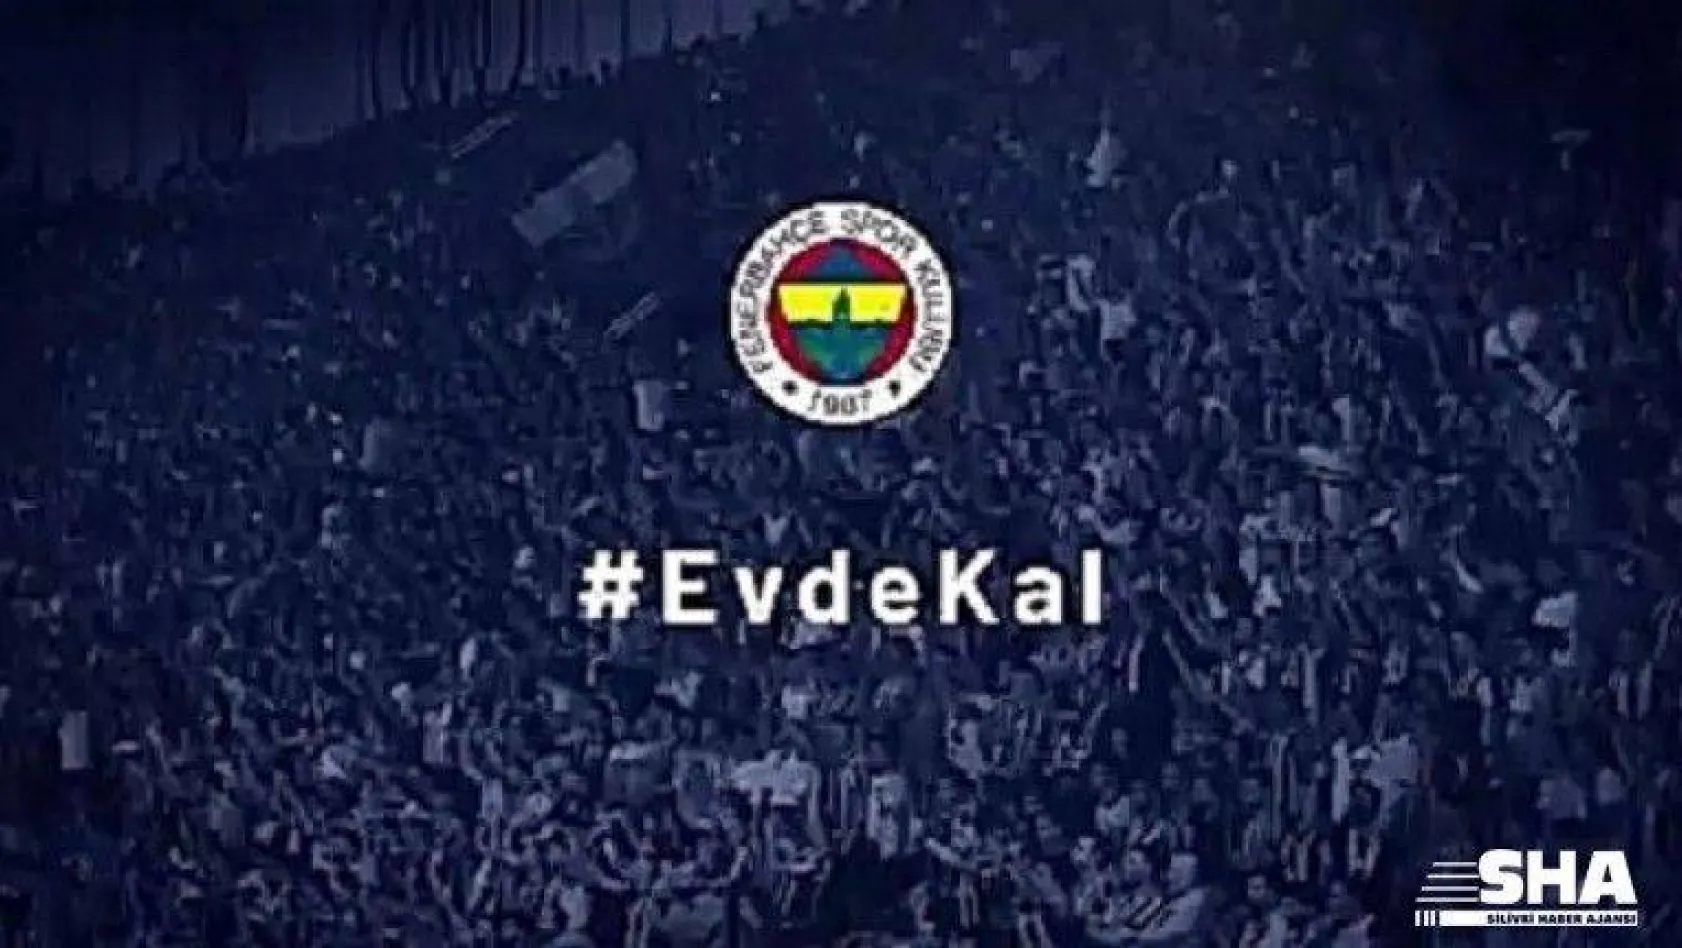 Fenerbahçe'den 'Evde kal' videosu